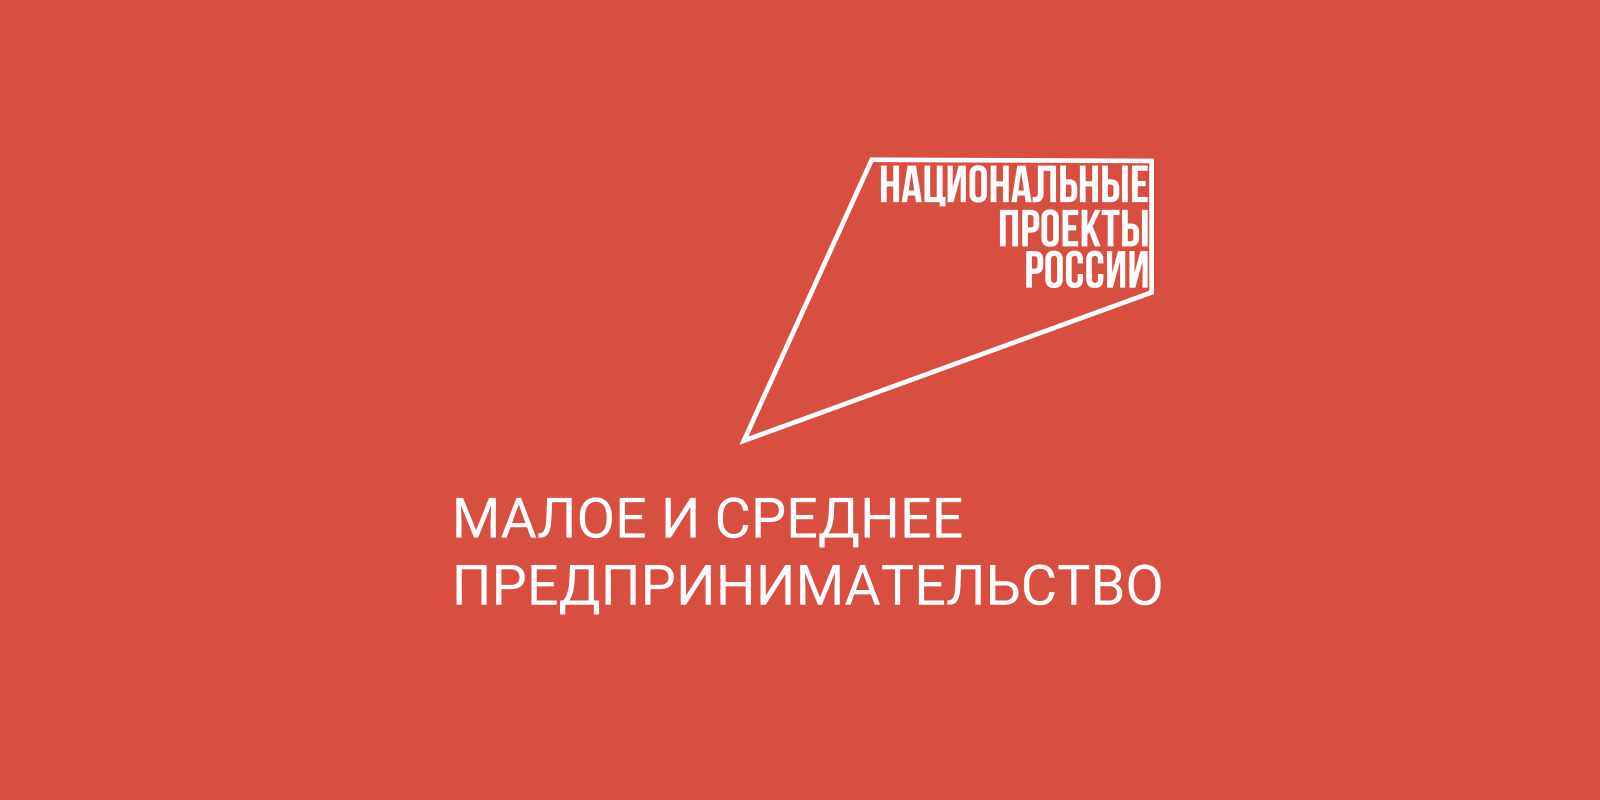 В Вологодской области продолжается прием заявок на участие в образовательном проекте «Мама-предприниматель».